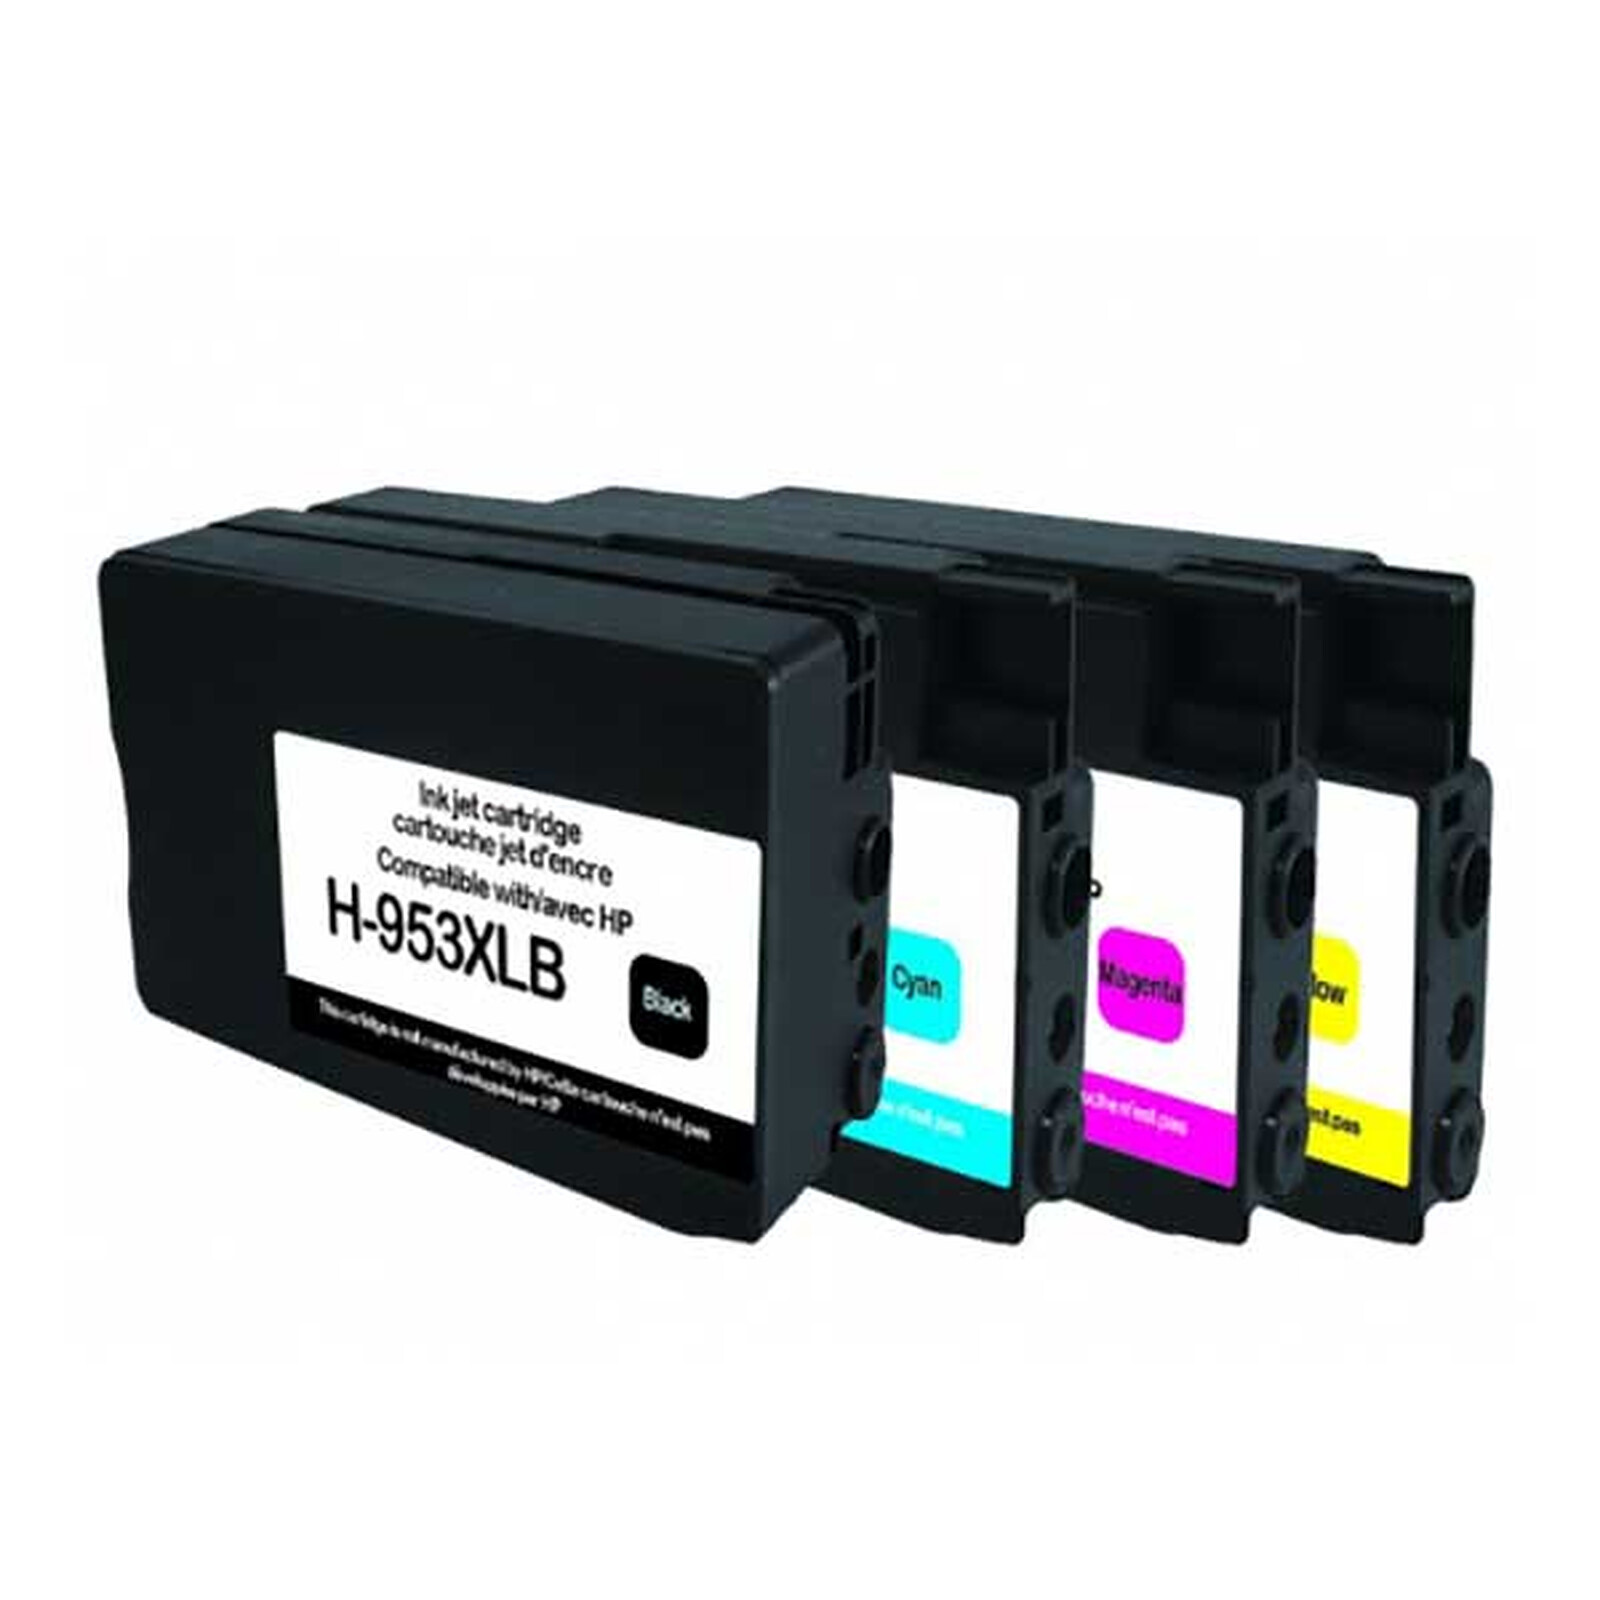 COMETE - 953XL - 4 Cartouches compatibles HP 953 XL 953XL - Noir et Couleur  - Marque française - Cartouche imprimante - LDLC